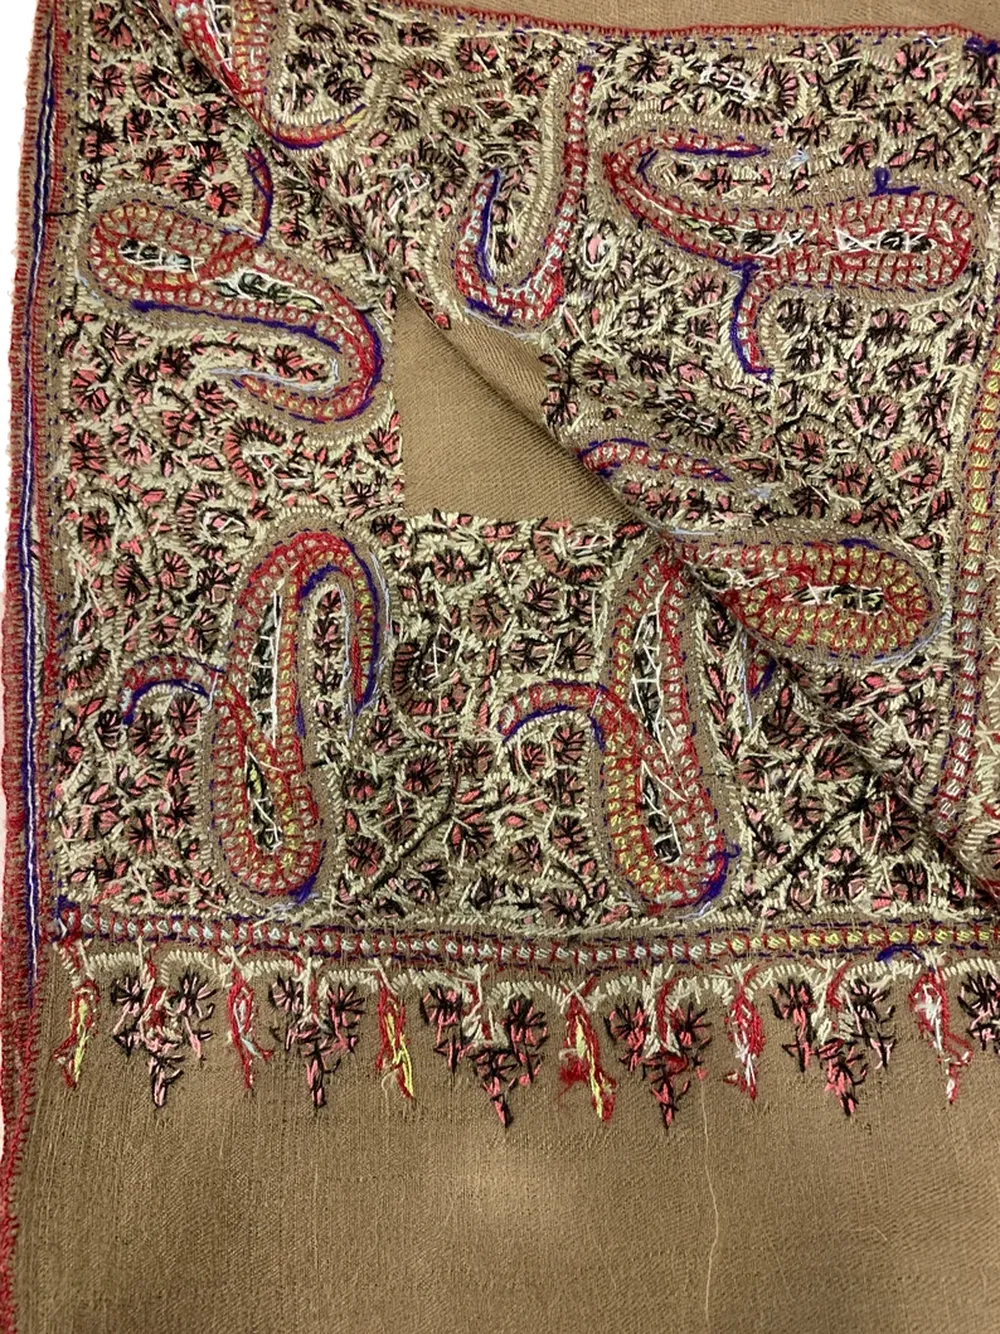 Sozni Hand Embroidered Pure Pashmina Shawl